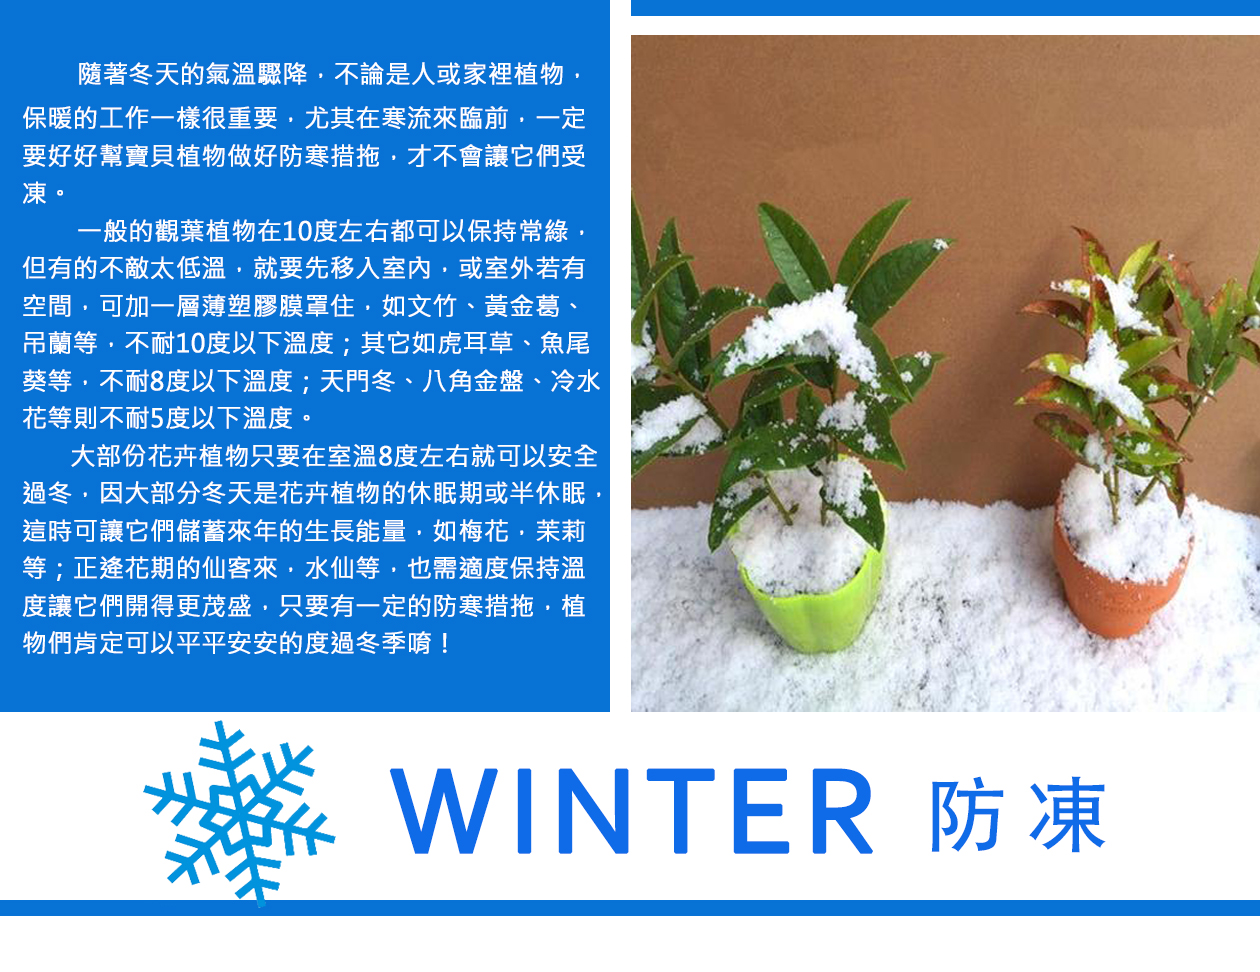 冬天植物照顧-防凍.jpg